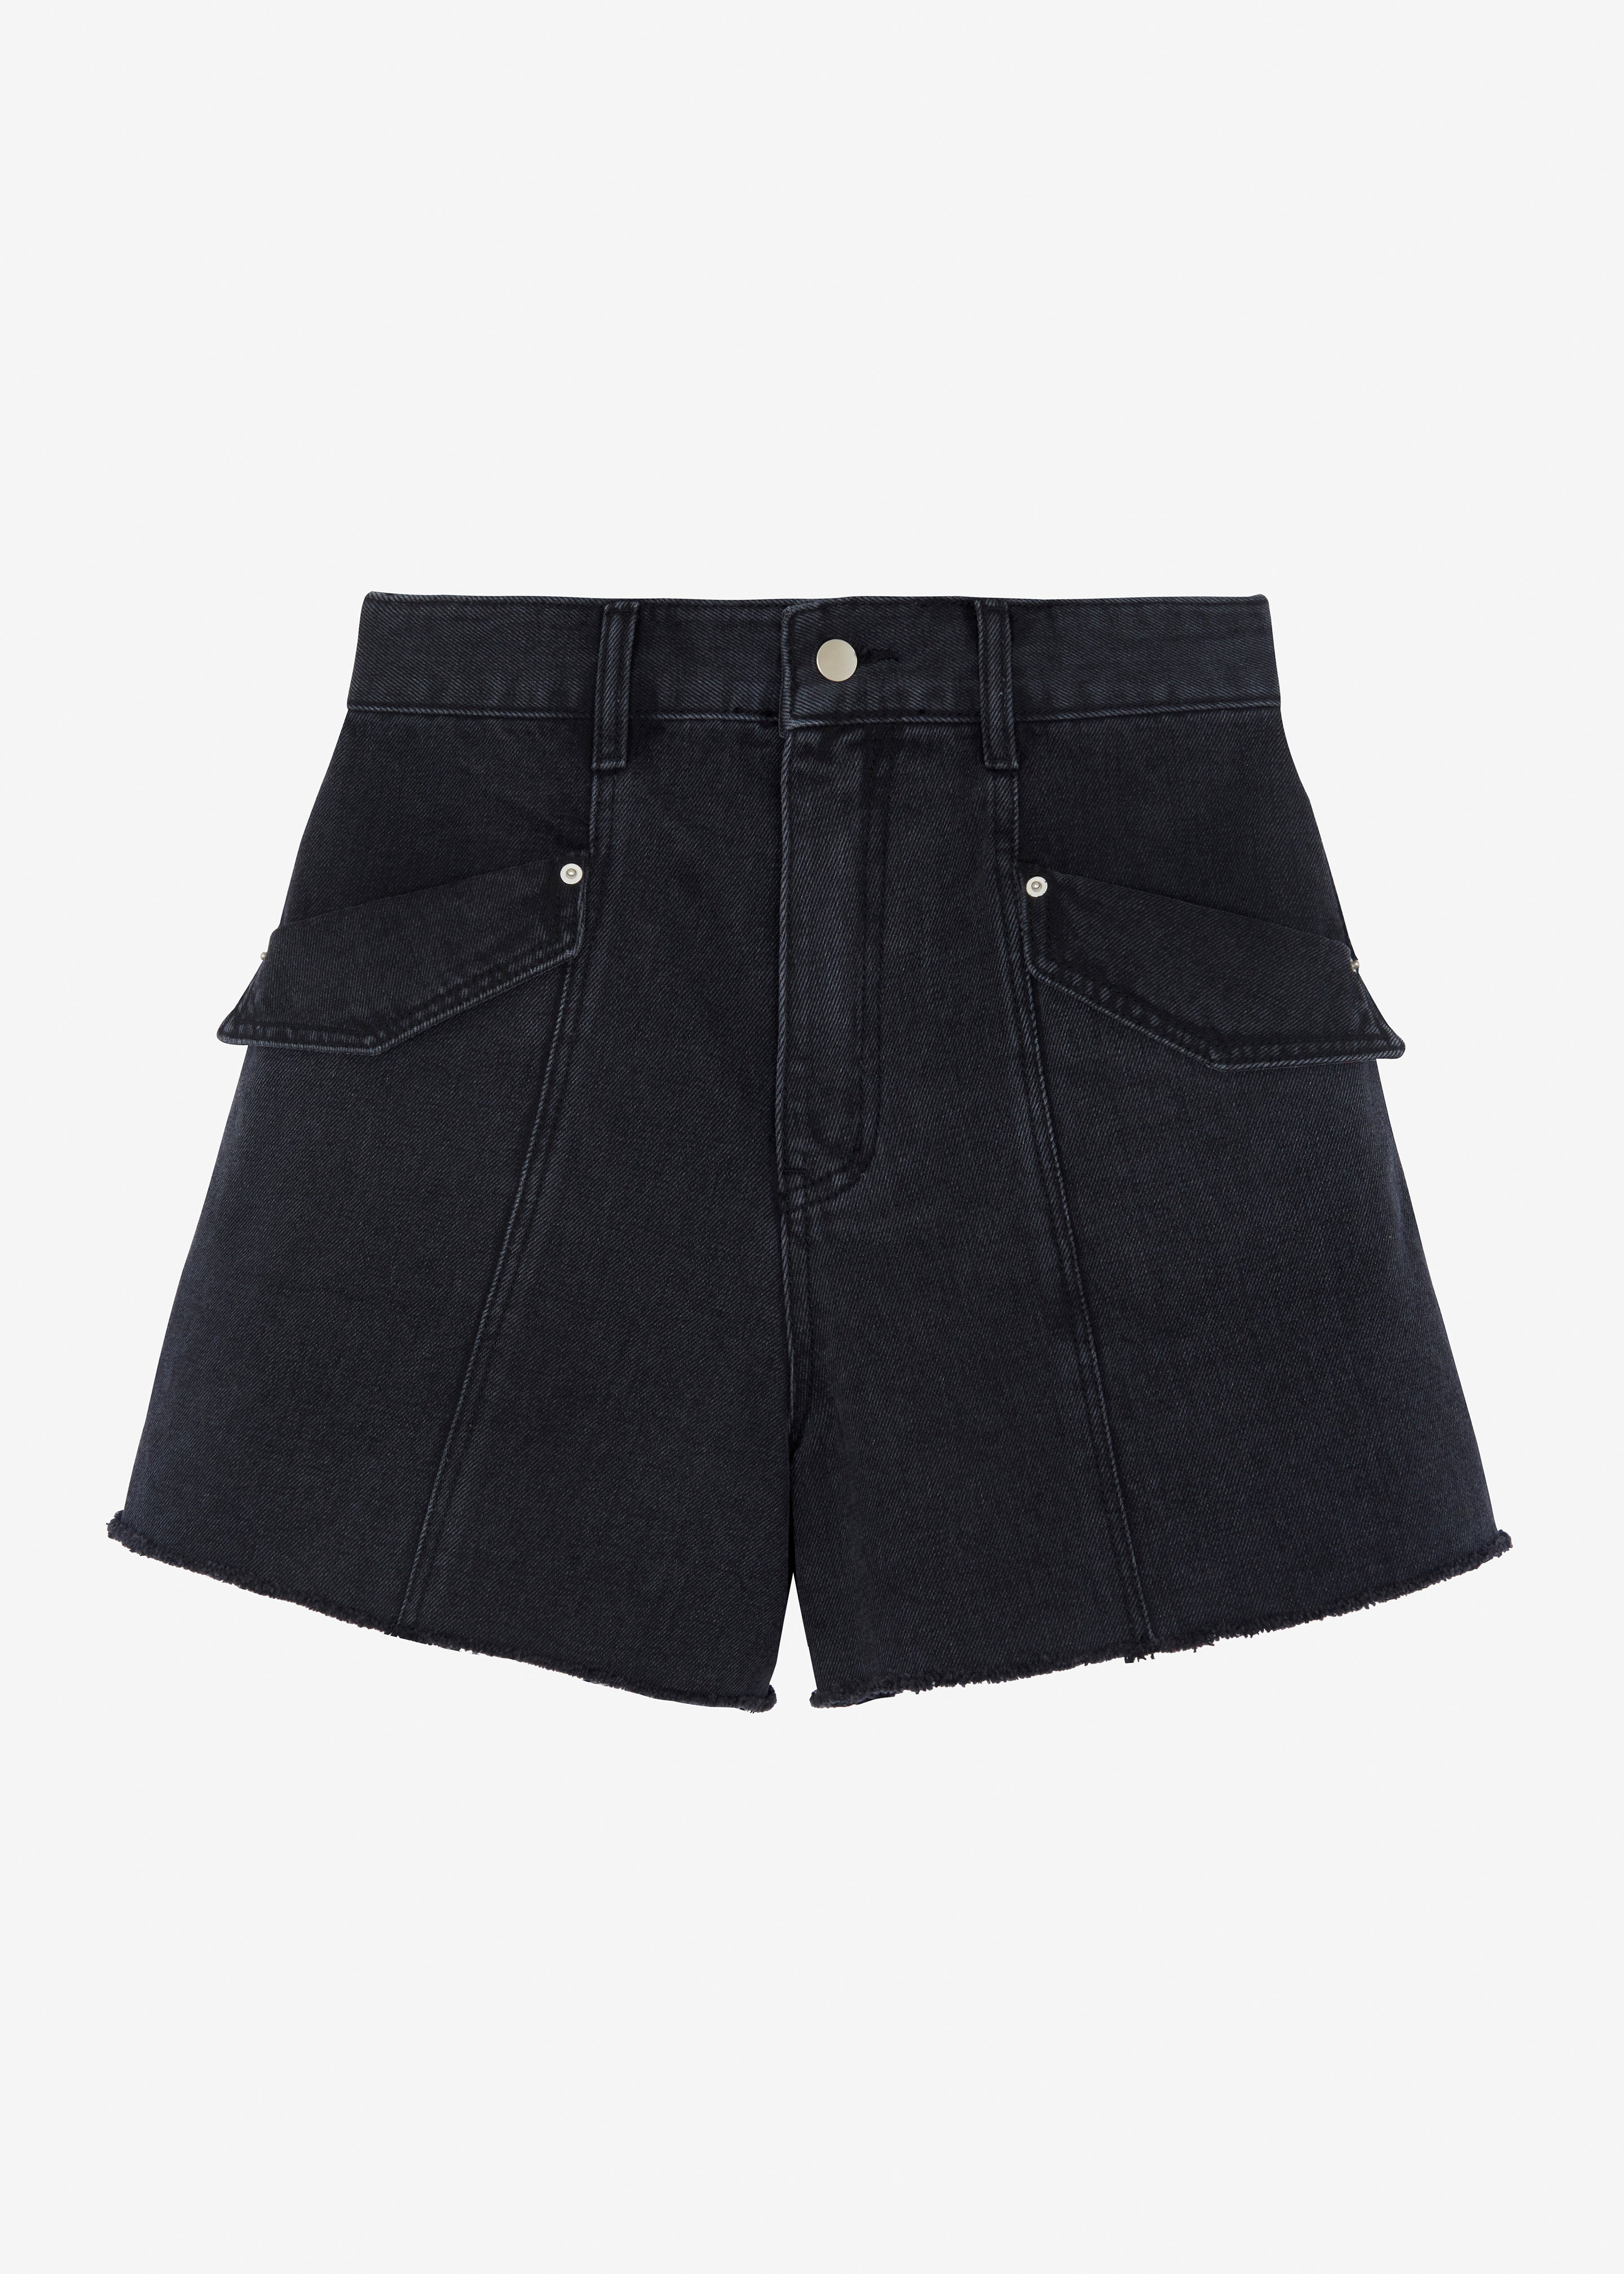 Mahoney Denim Pocket Shorts - Black Washed - 9